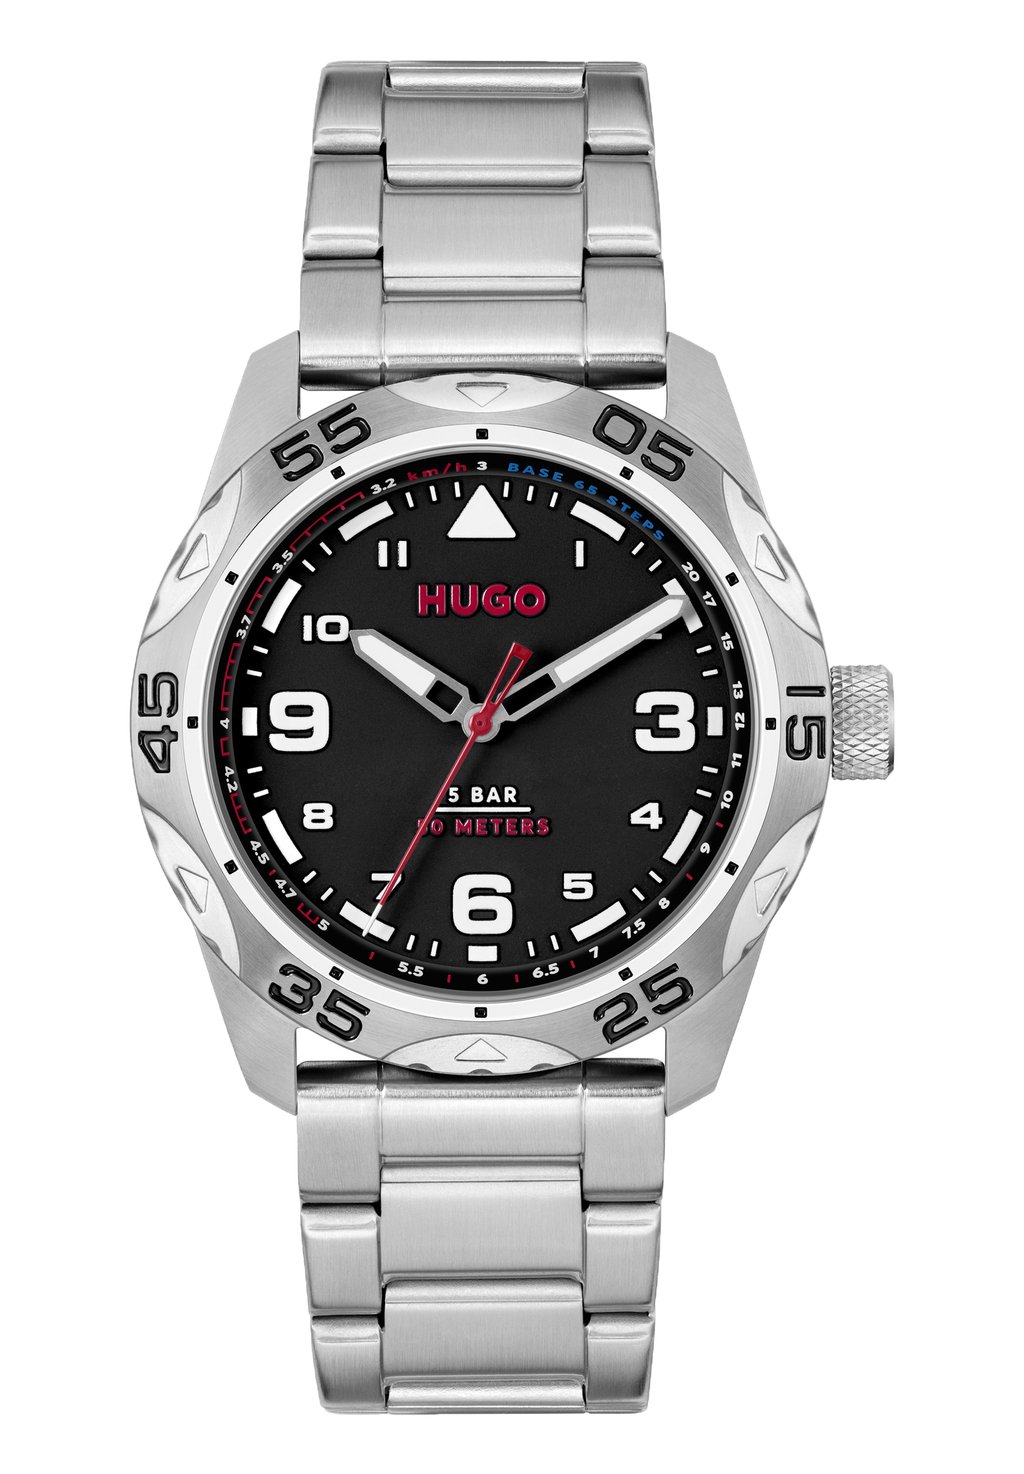 Часы Trek HUGO, цвет silber silber silber schwarz silber j improvement